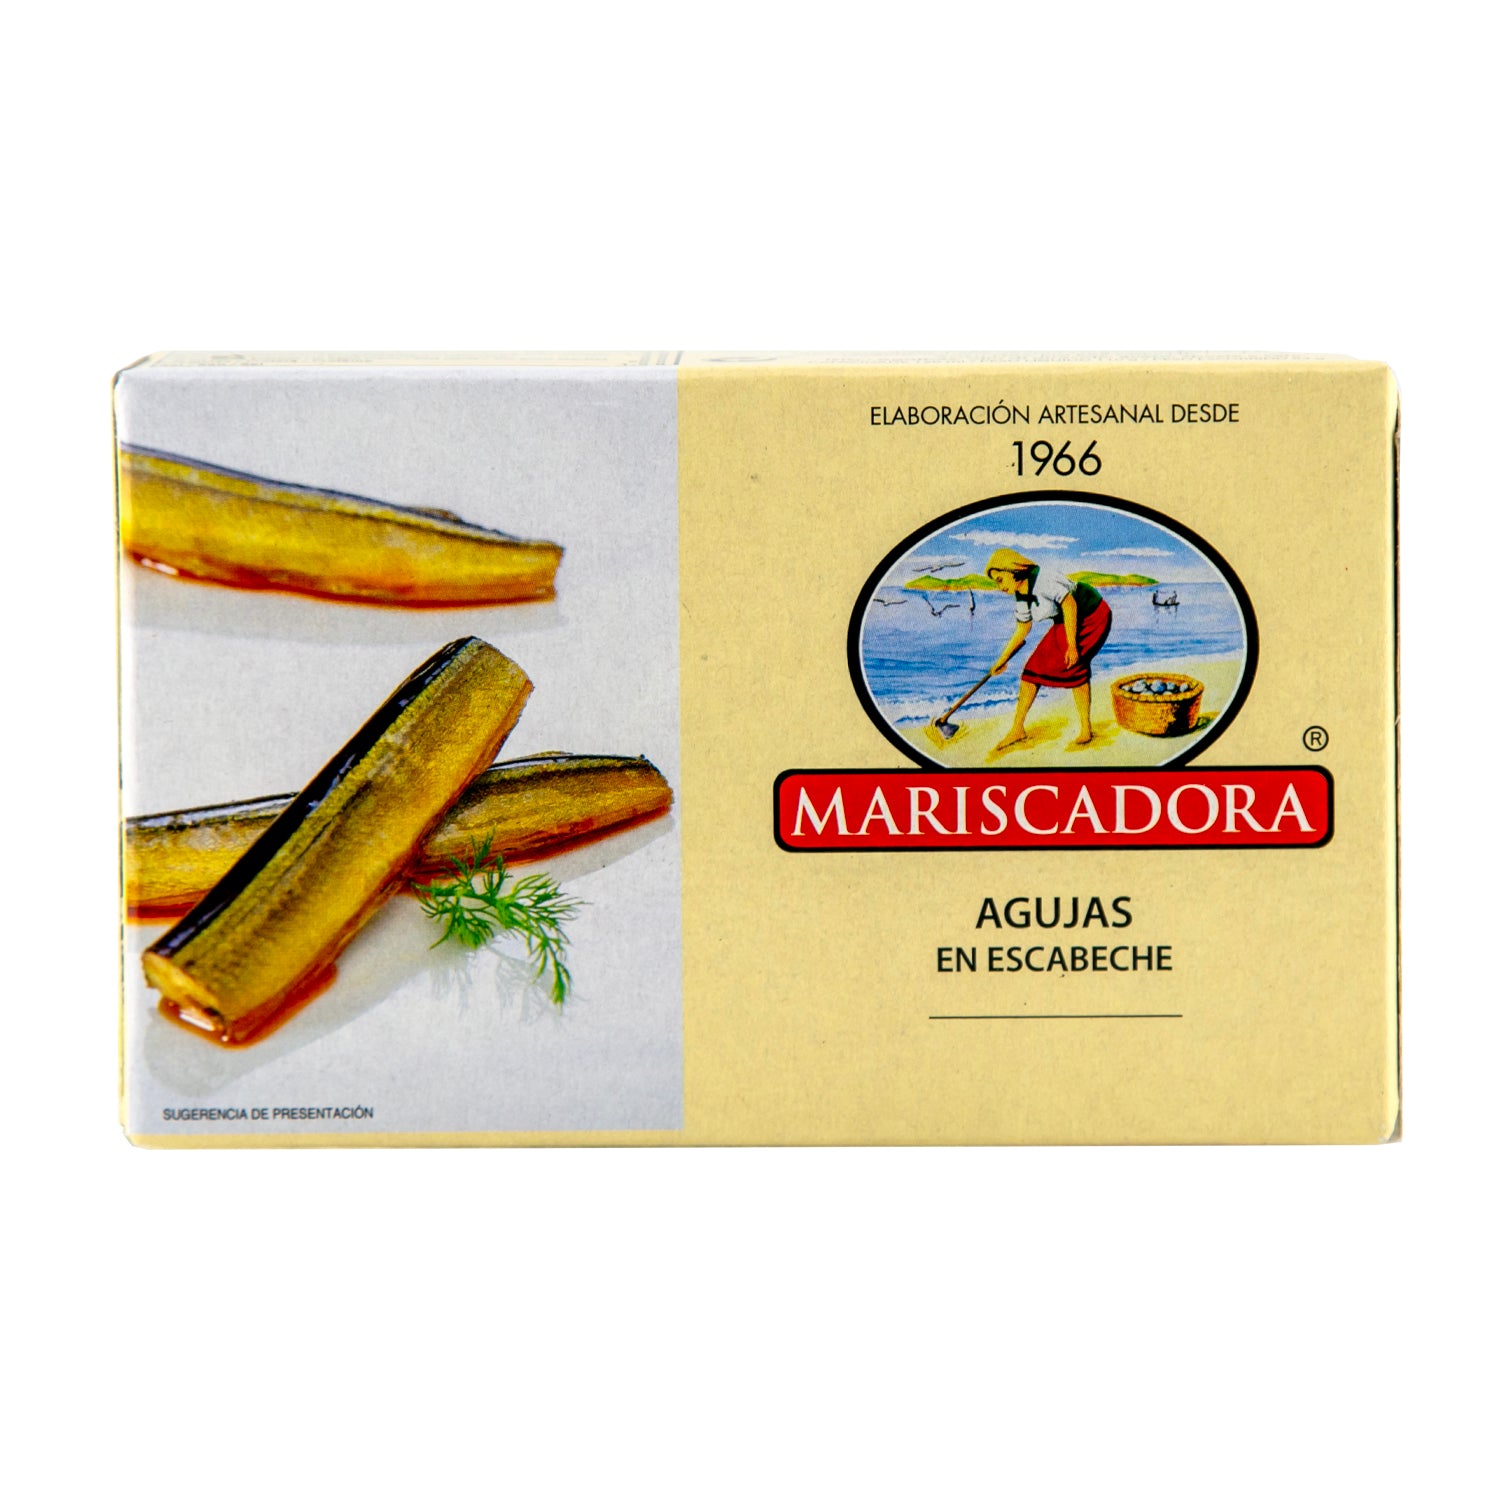 Mariscadora Garfish in pickle sauce